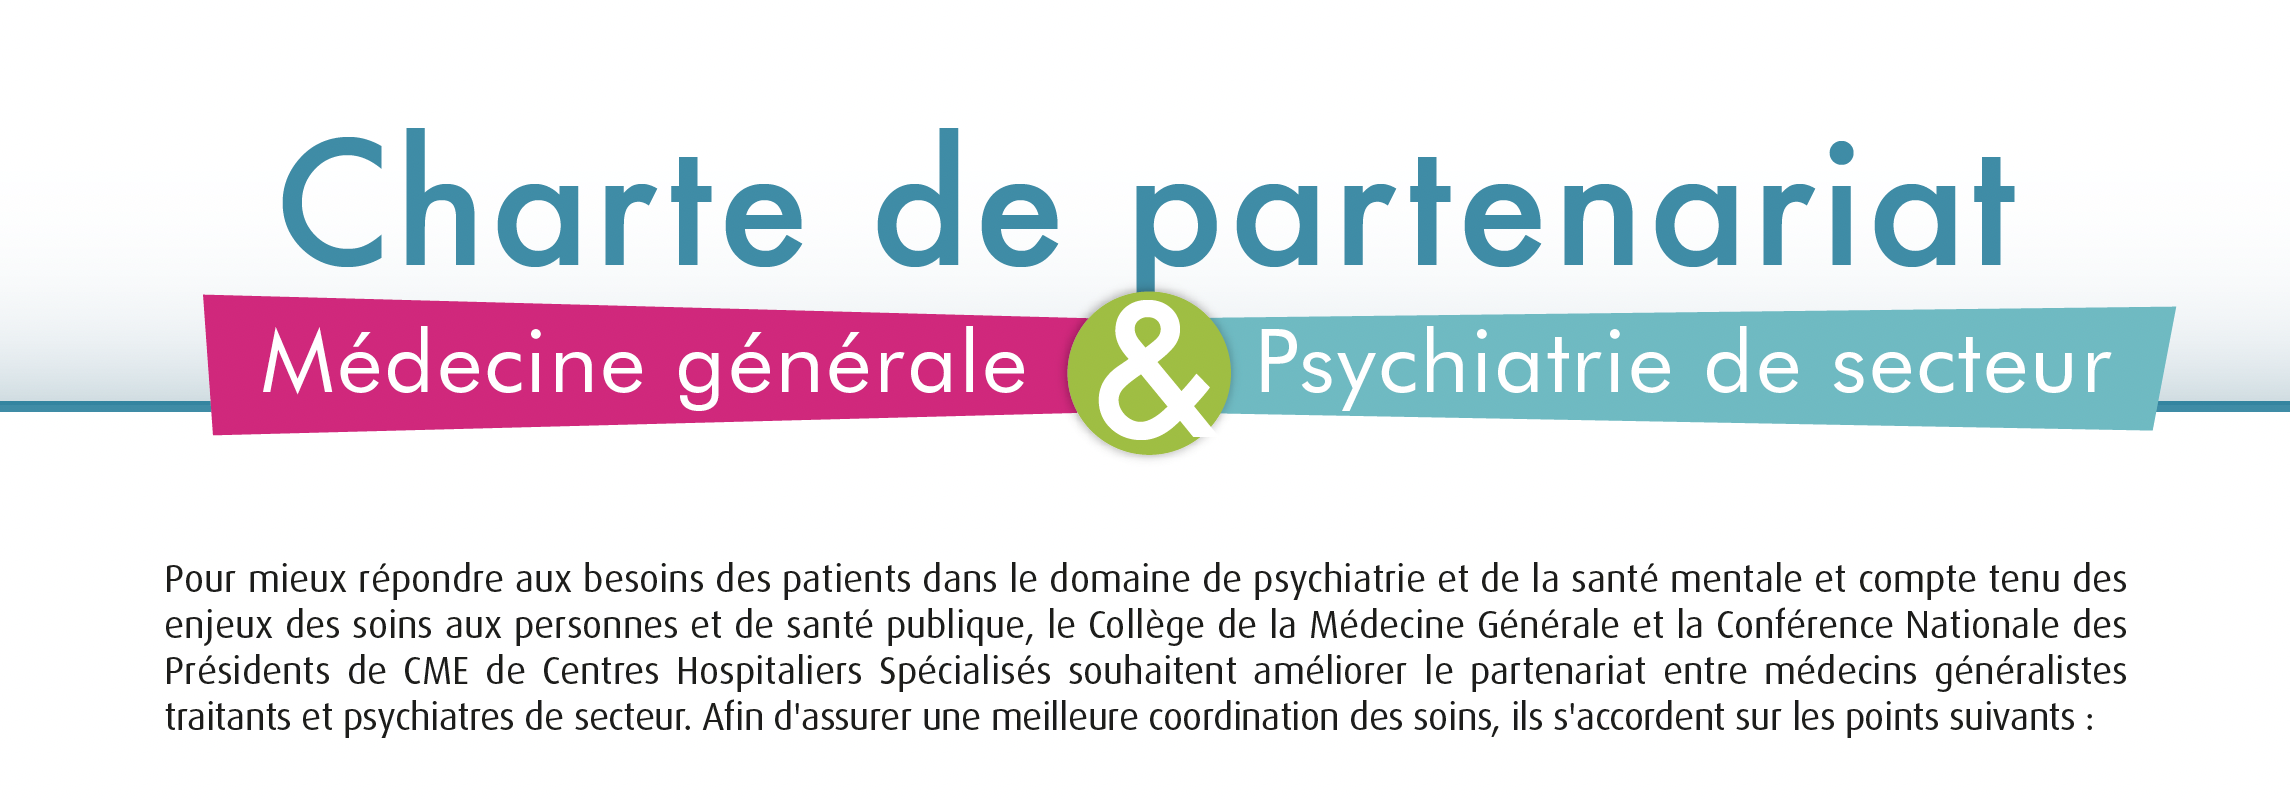 Charte Partenariat Médecine générale et Psychiatrie de secteur